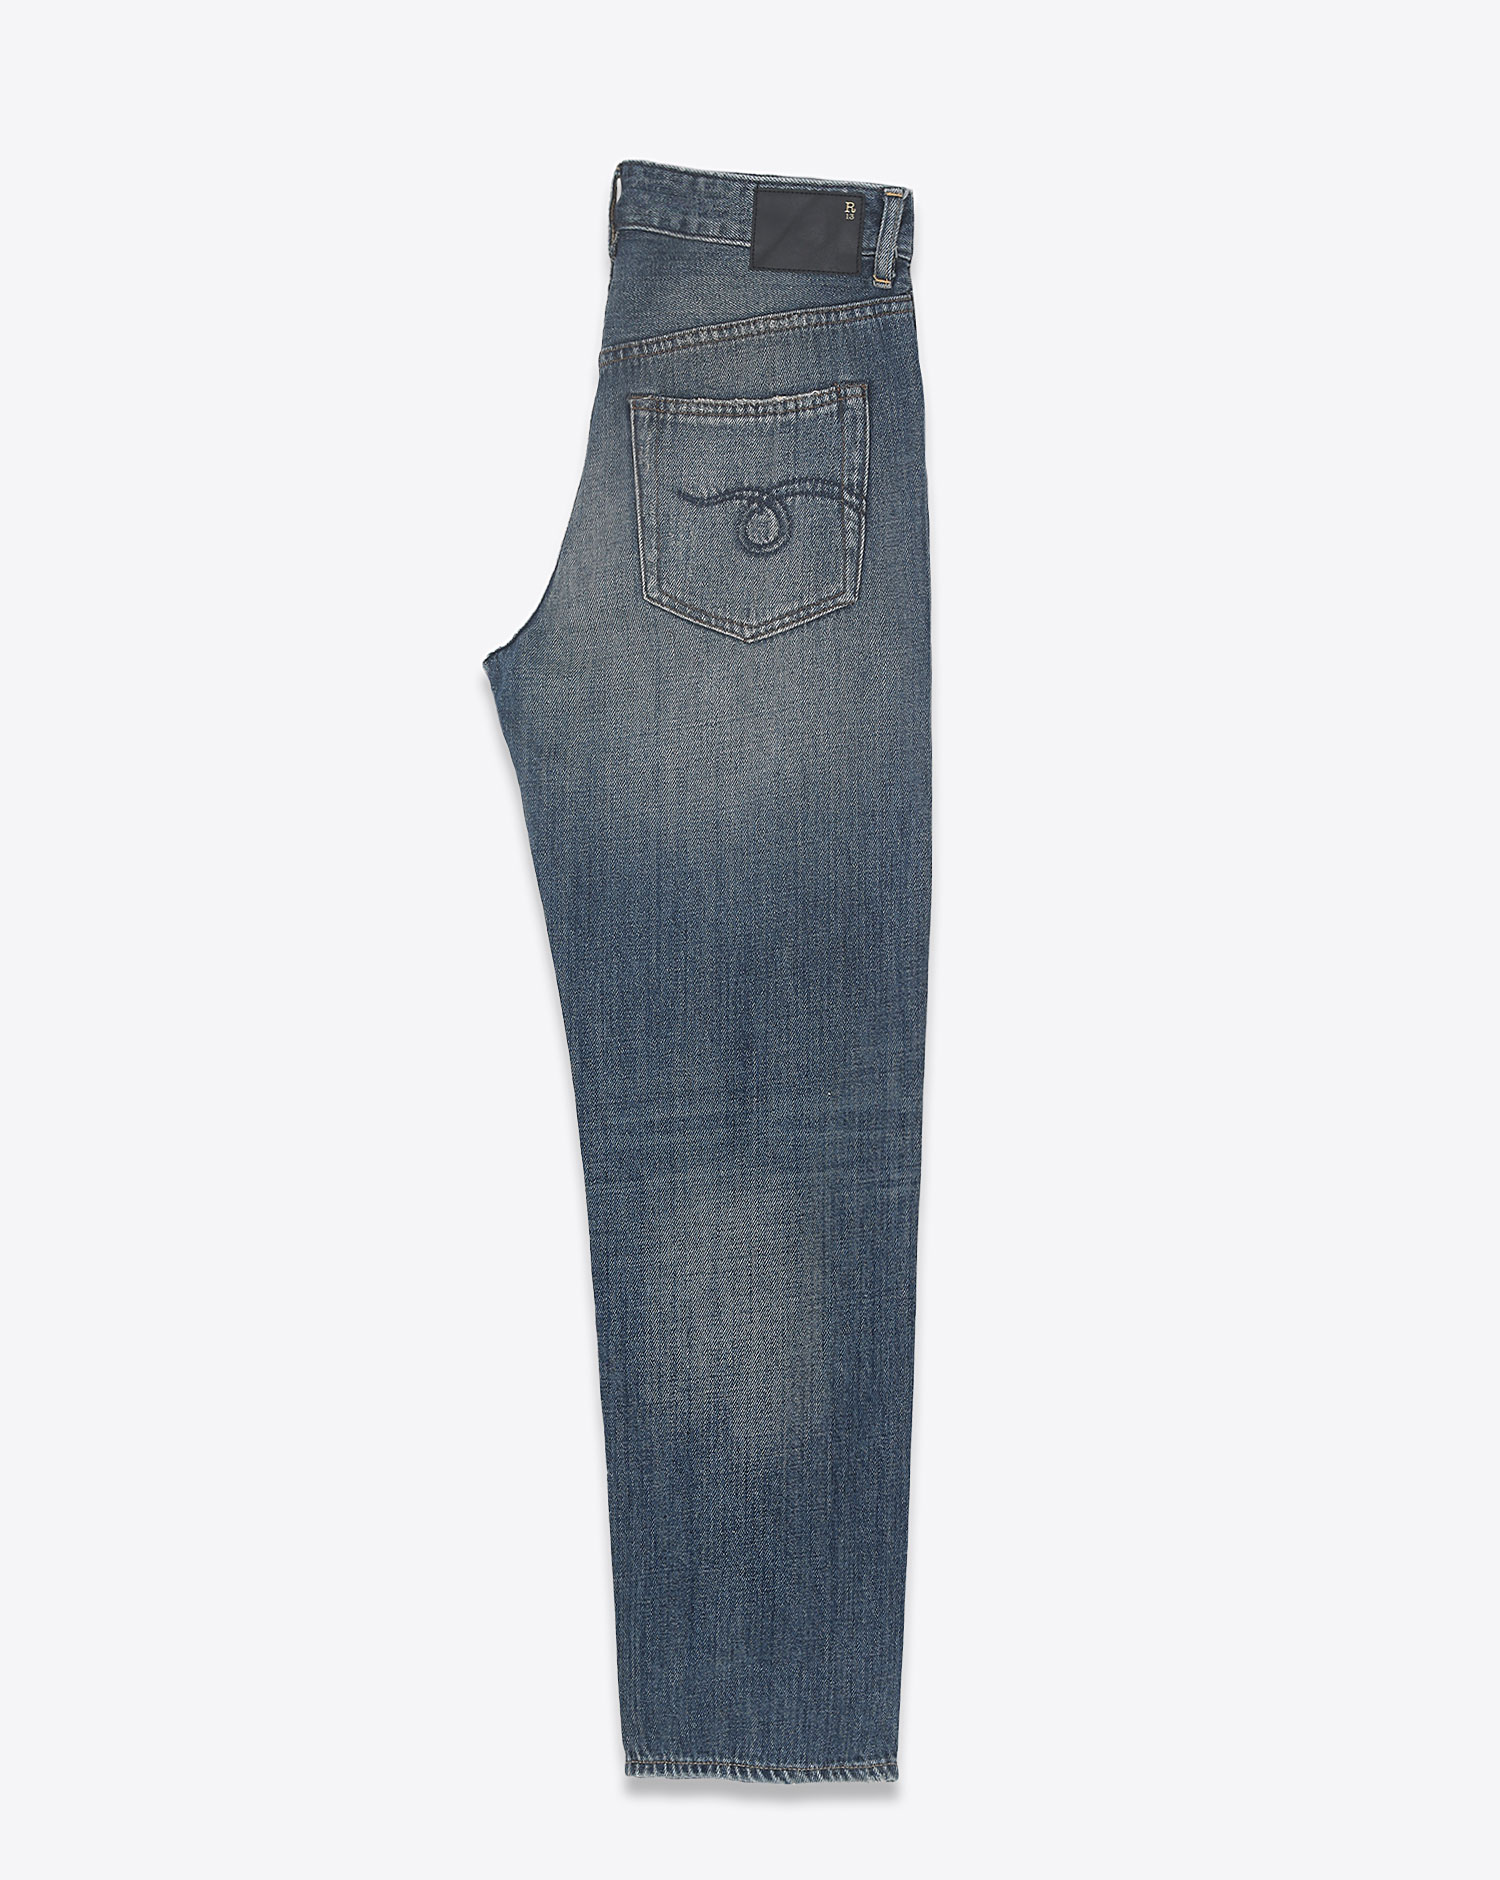 Jeans Boyfriend slim Romeo en toile japonaise délavage bleu ciel Dane Indigo R13 Denim. Profil. 